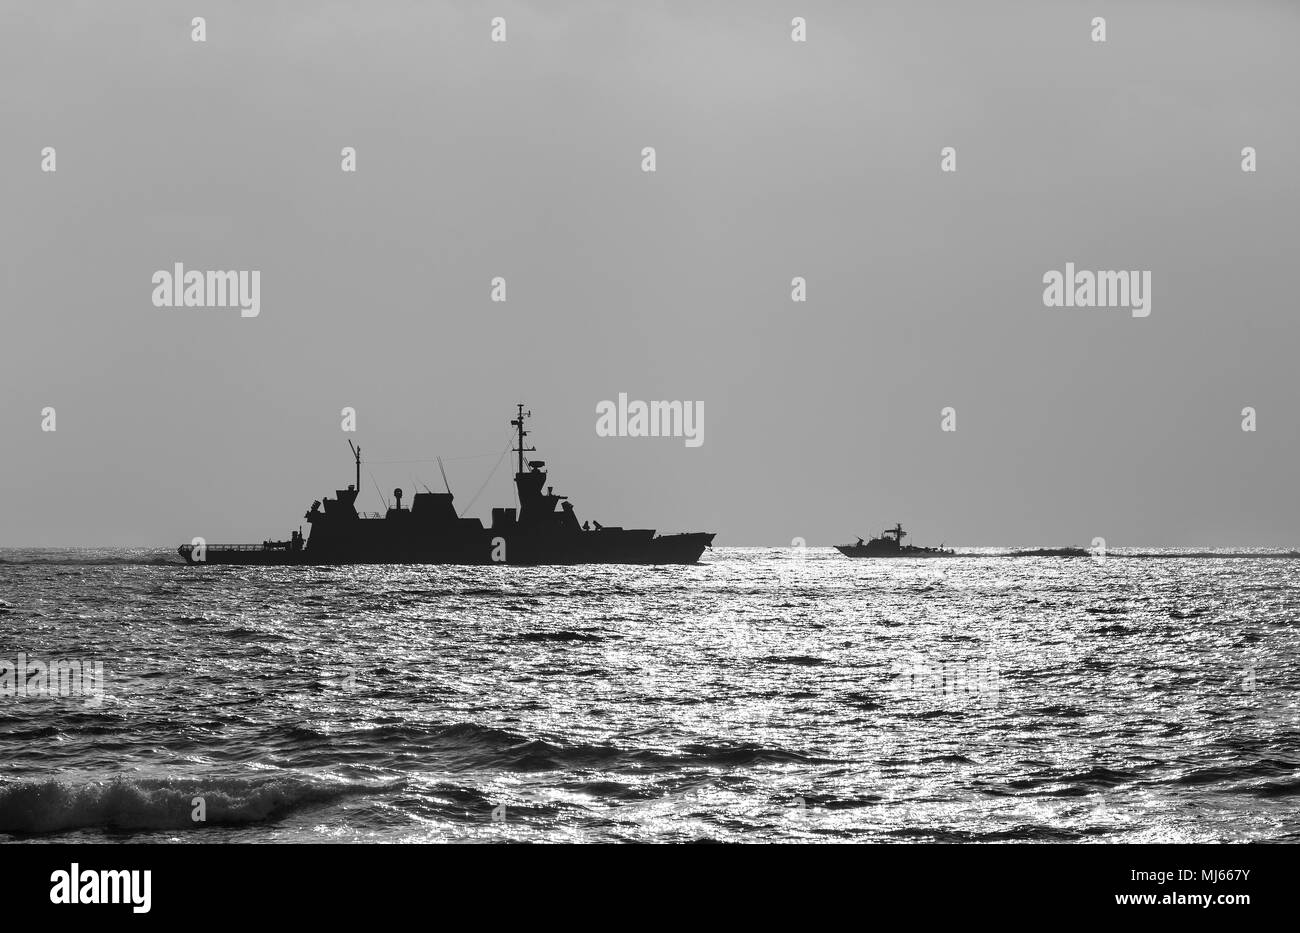 Silueta de un buque de guerra al atardecer en blanco y negro Foto de stock